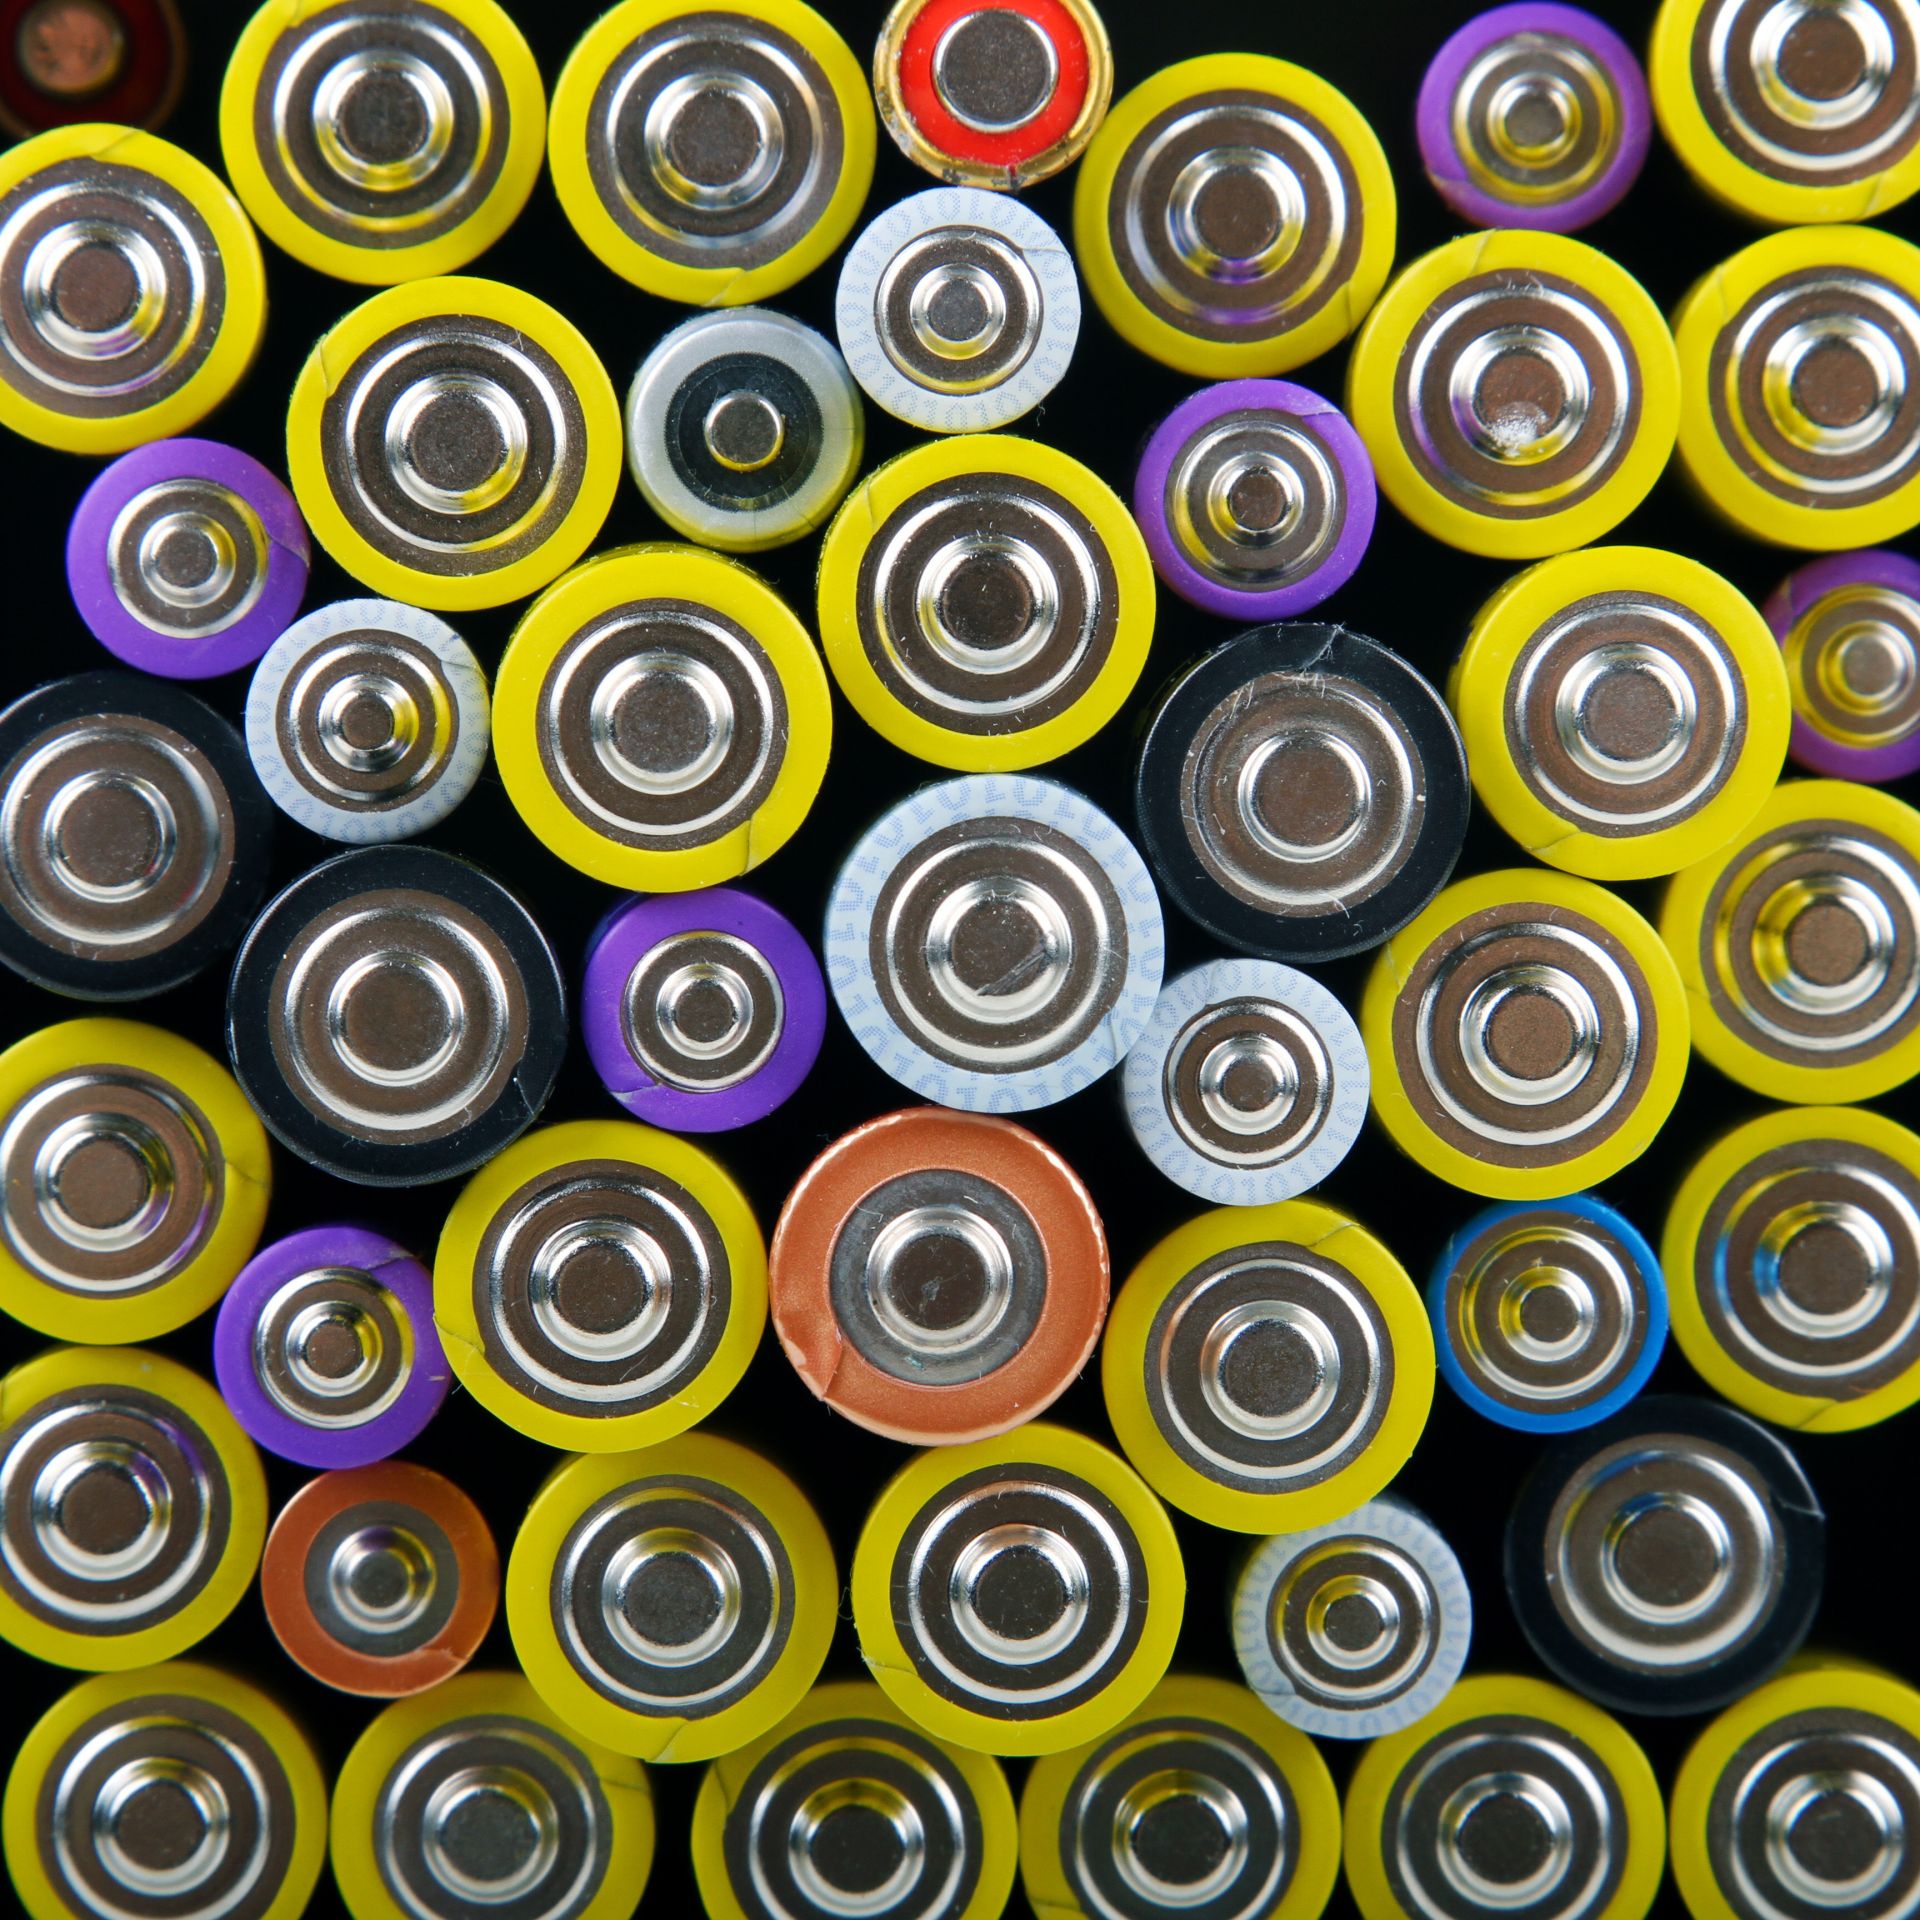 Zakázka na nákup baterií a monočlánků (Akumulátory, nabíječky, baterie) - Tábor